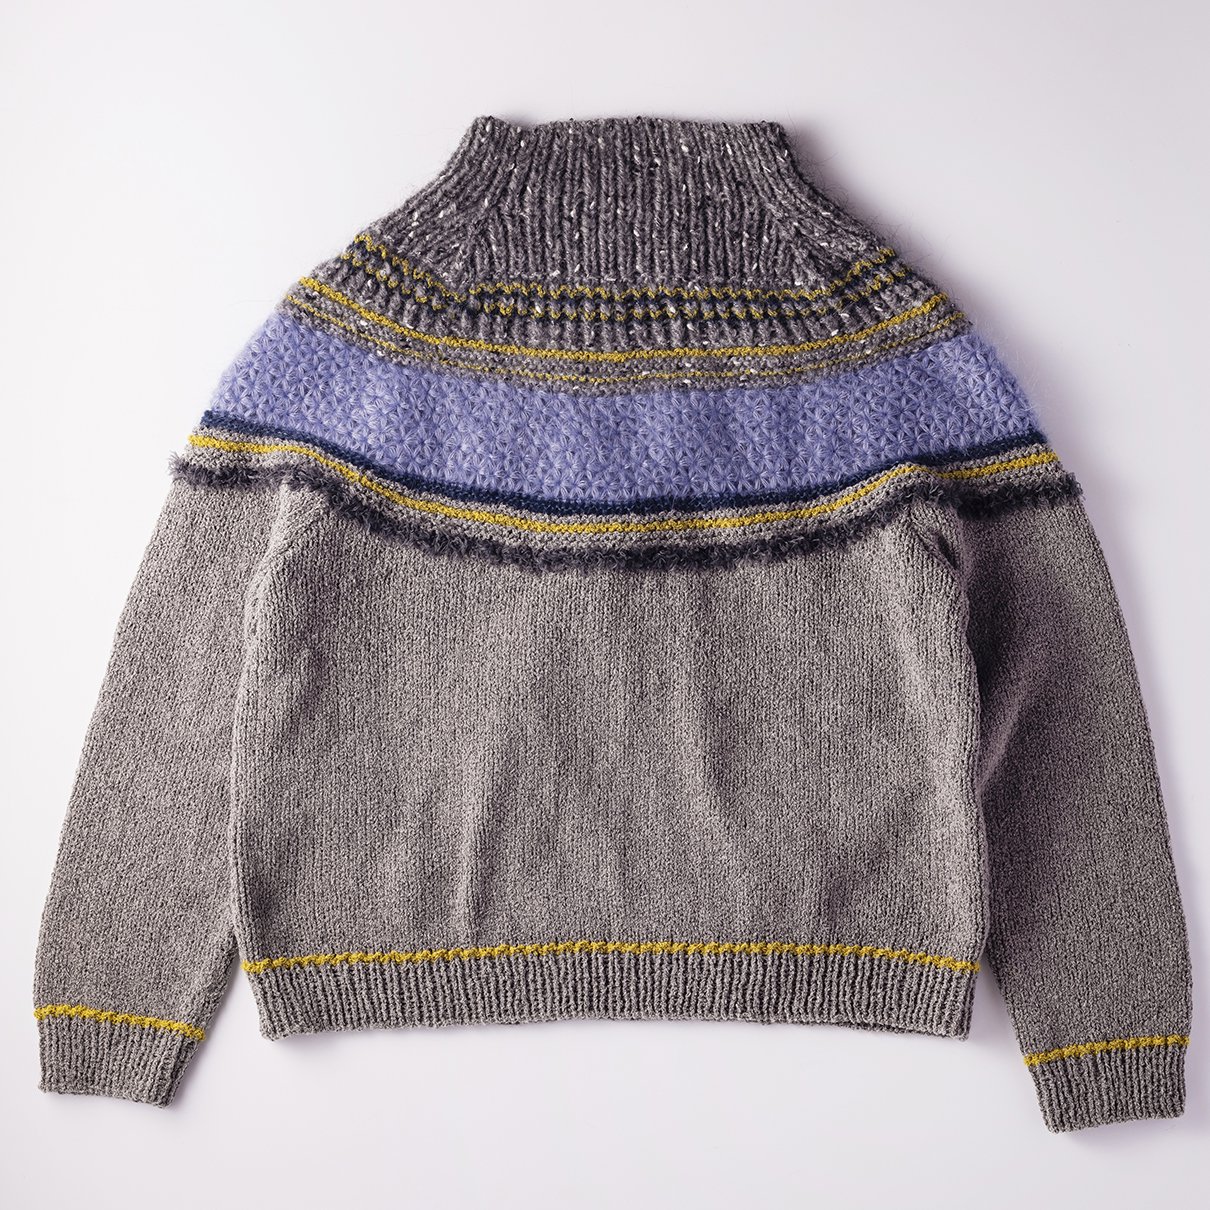 リフ編みヨークのプルオーバー